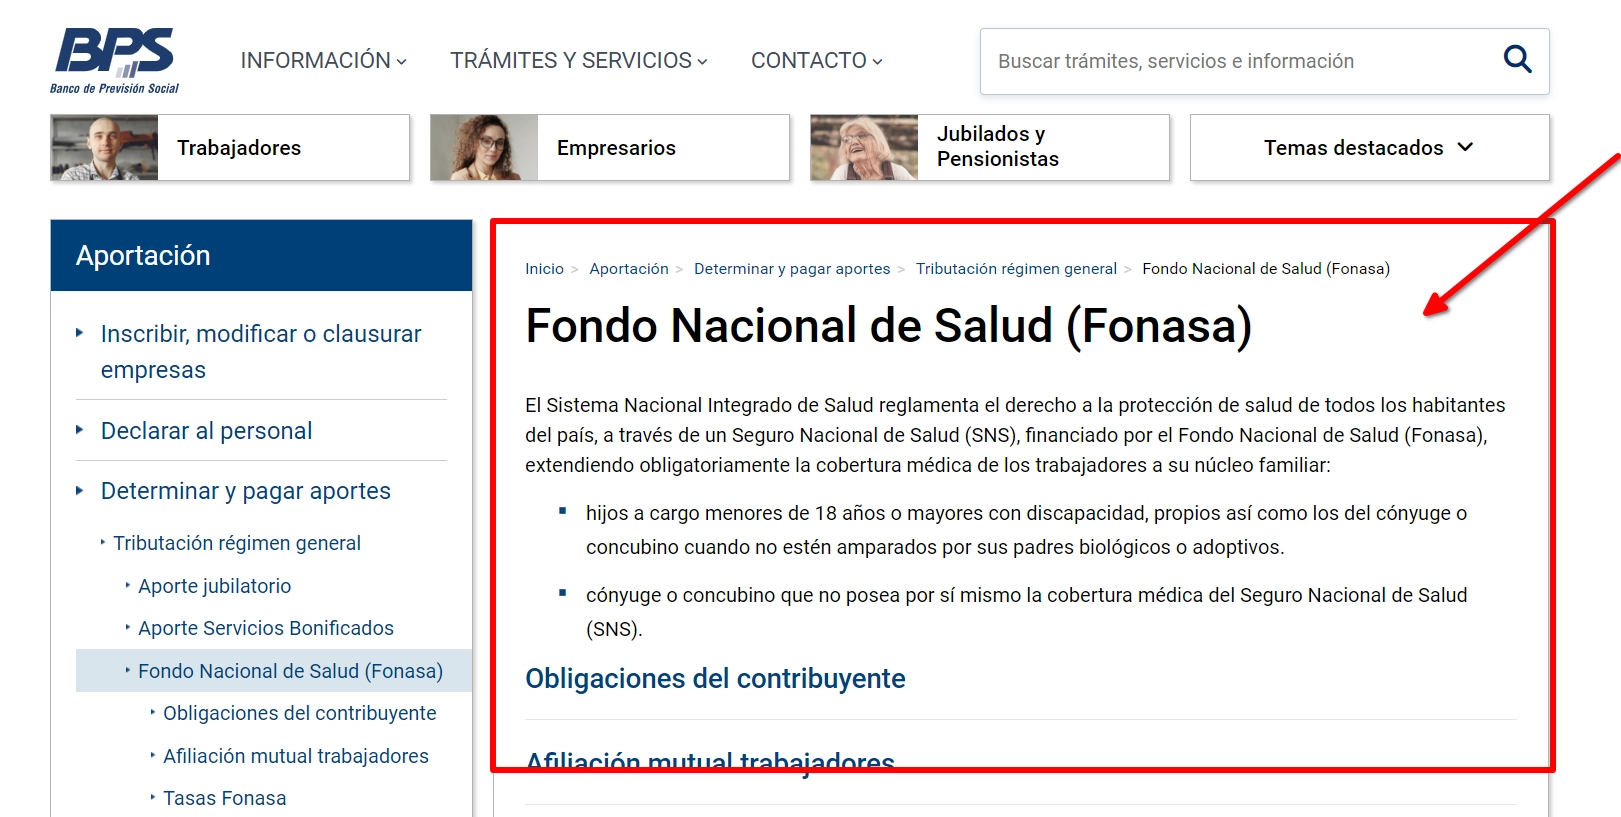 Página web del BPS con información sobre el Fondo Nacional de Salud (FONASA).